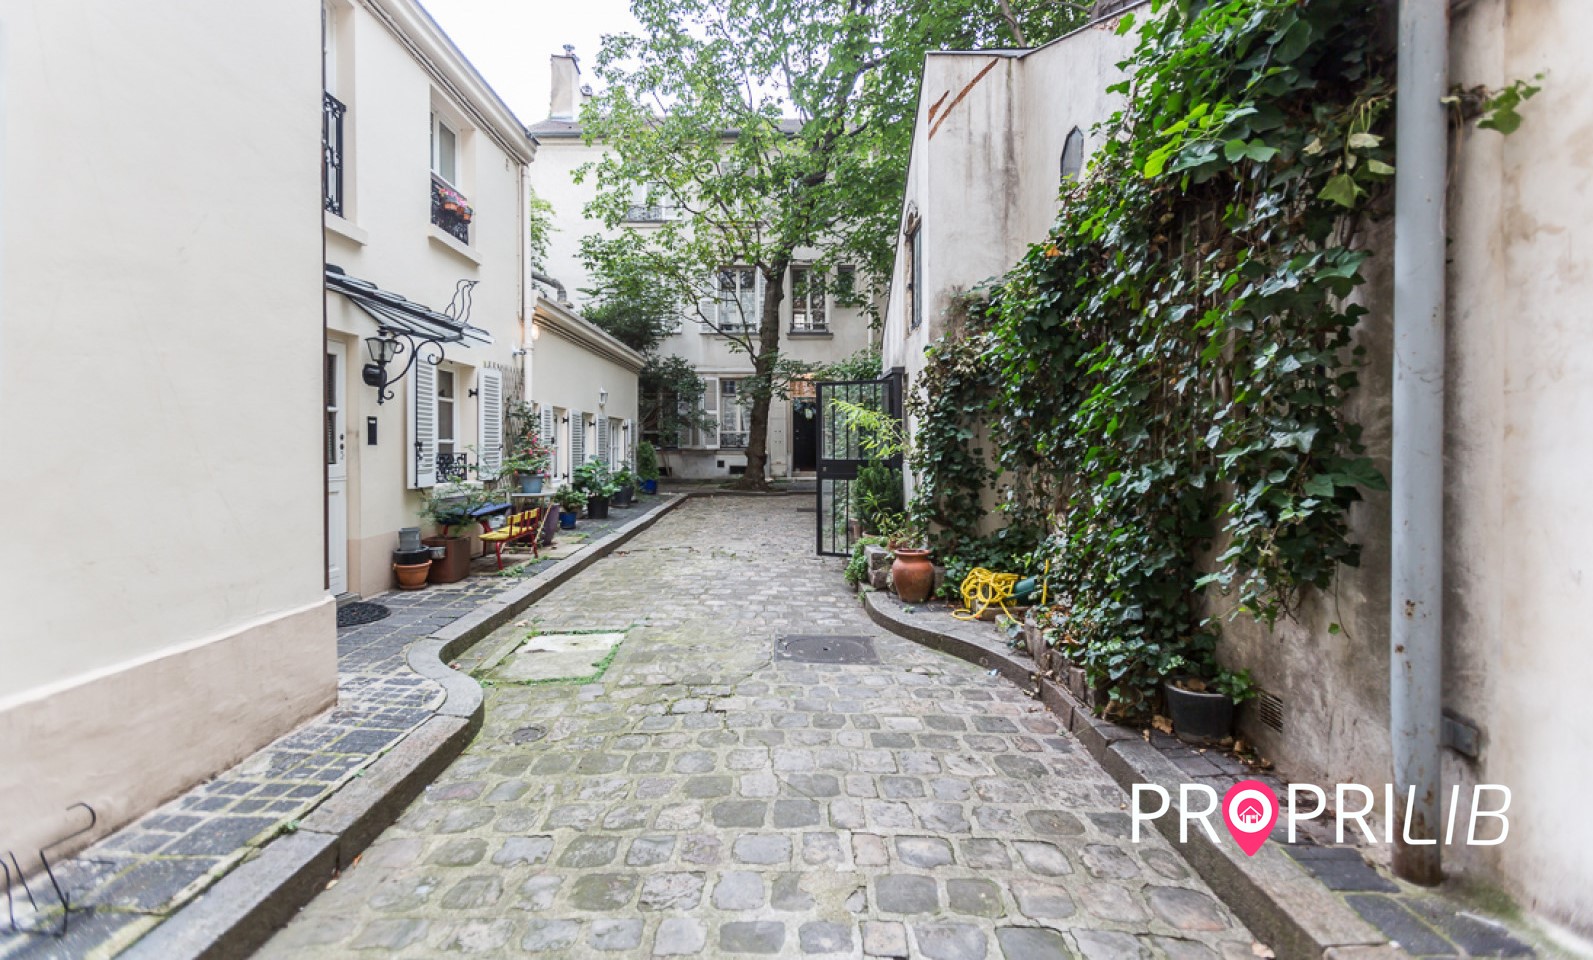 PropriLib l’agence immobilière en ligne à prix fixe vend cet appartement dans Paris 13ème